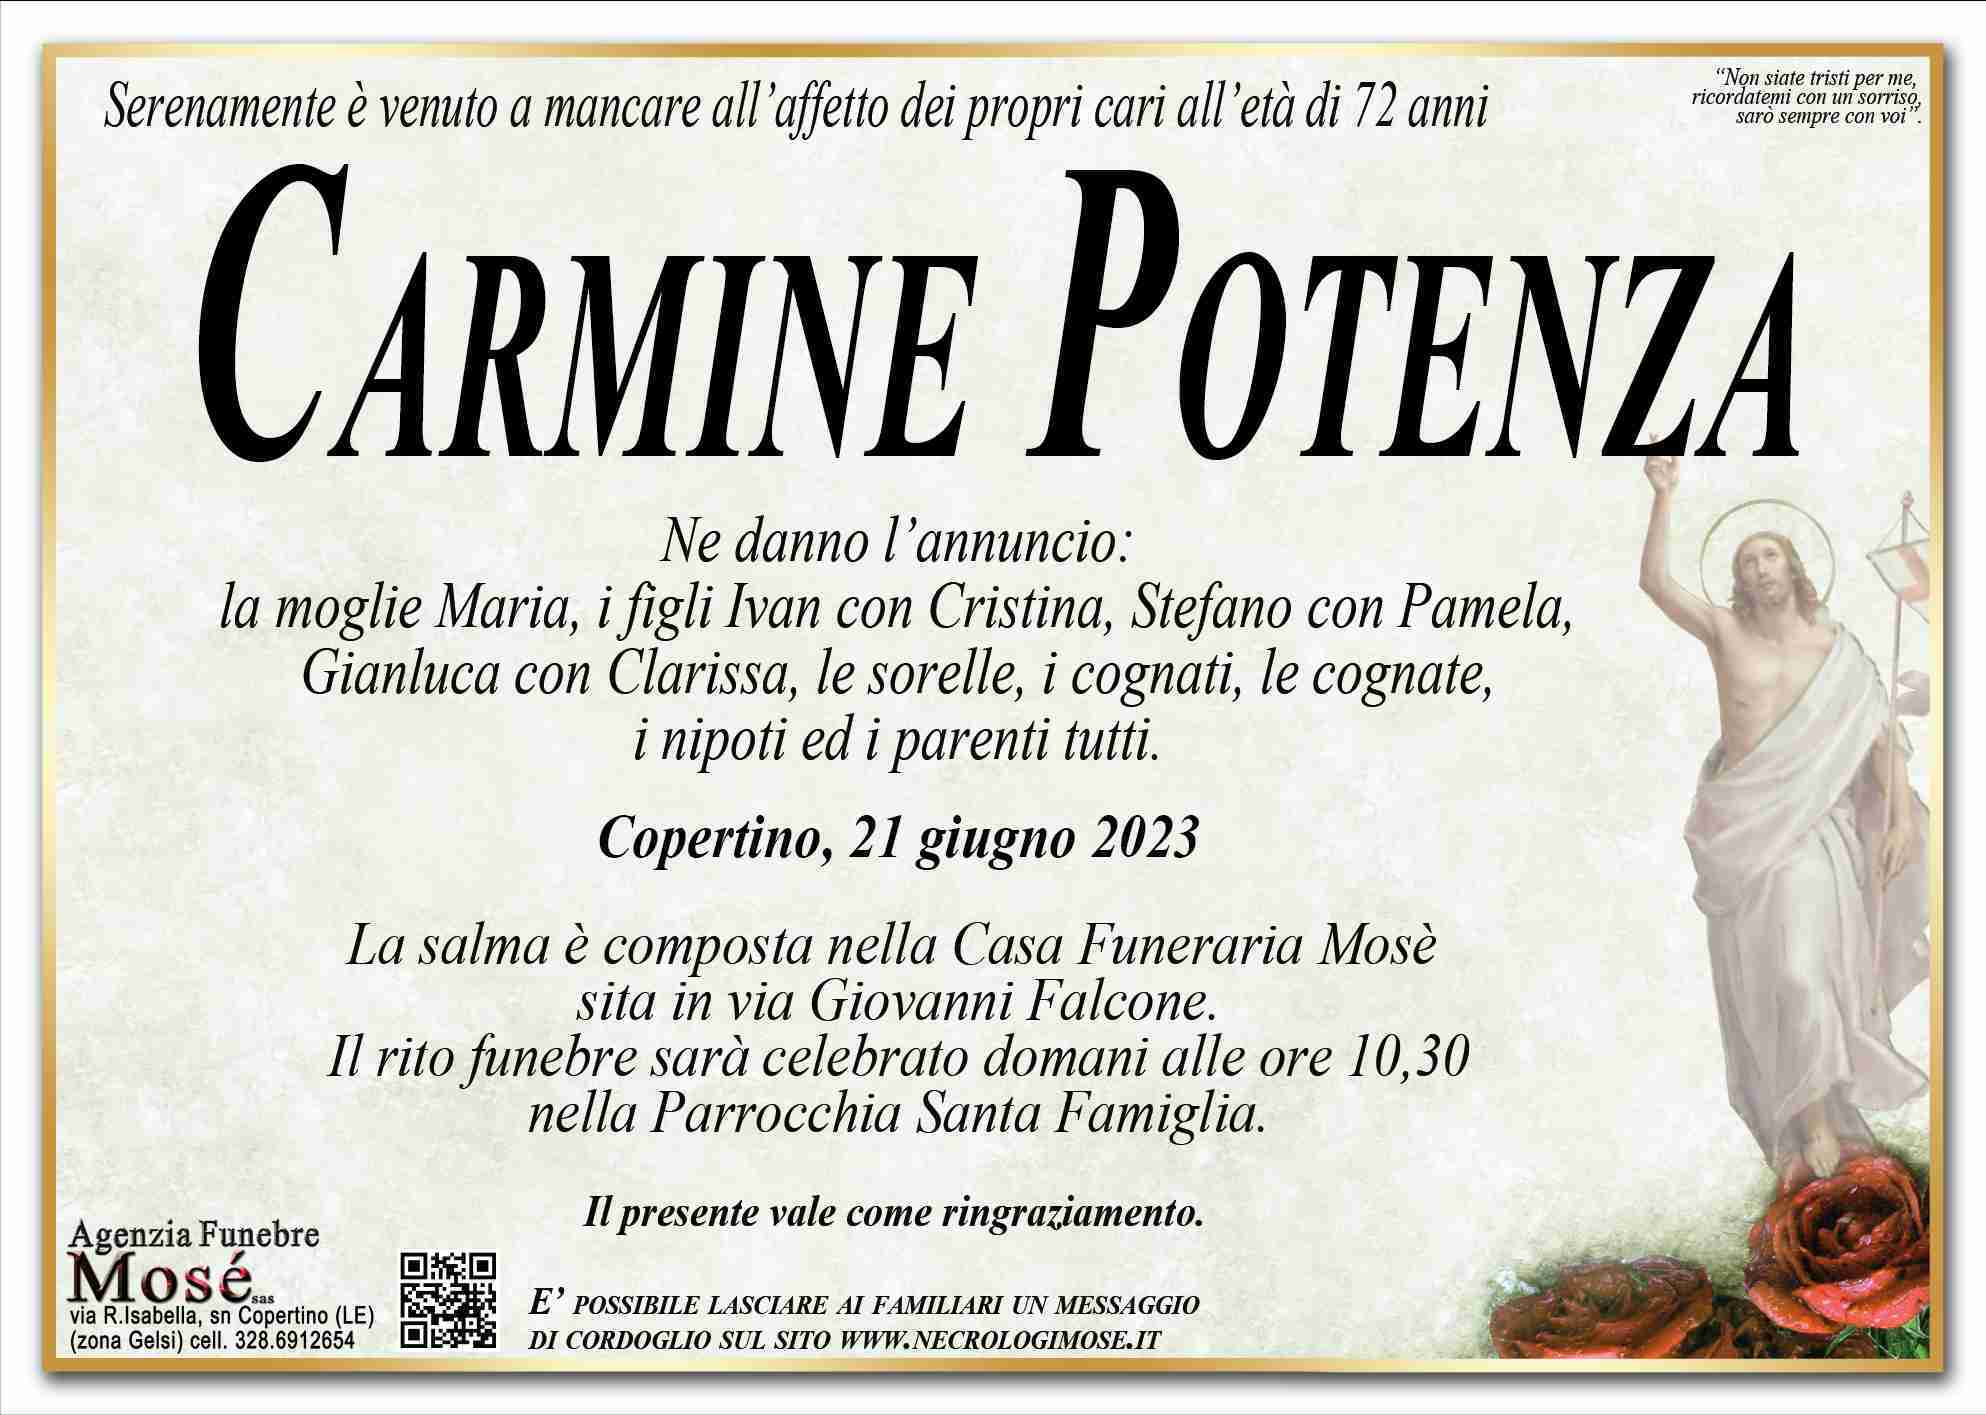 Carmine Potenza